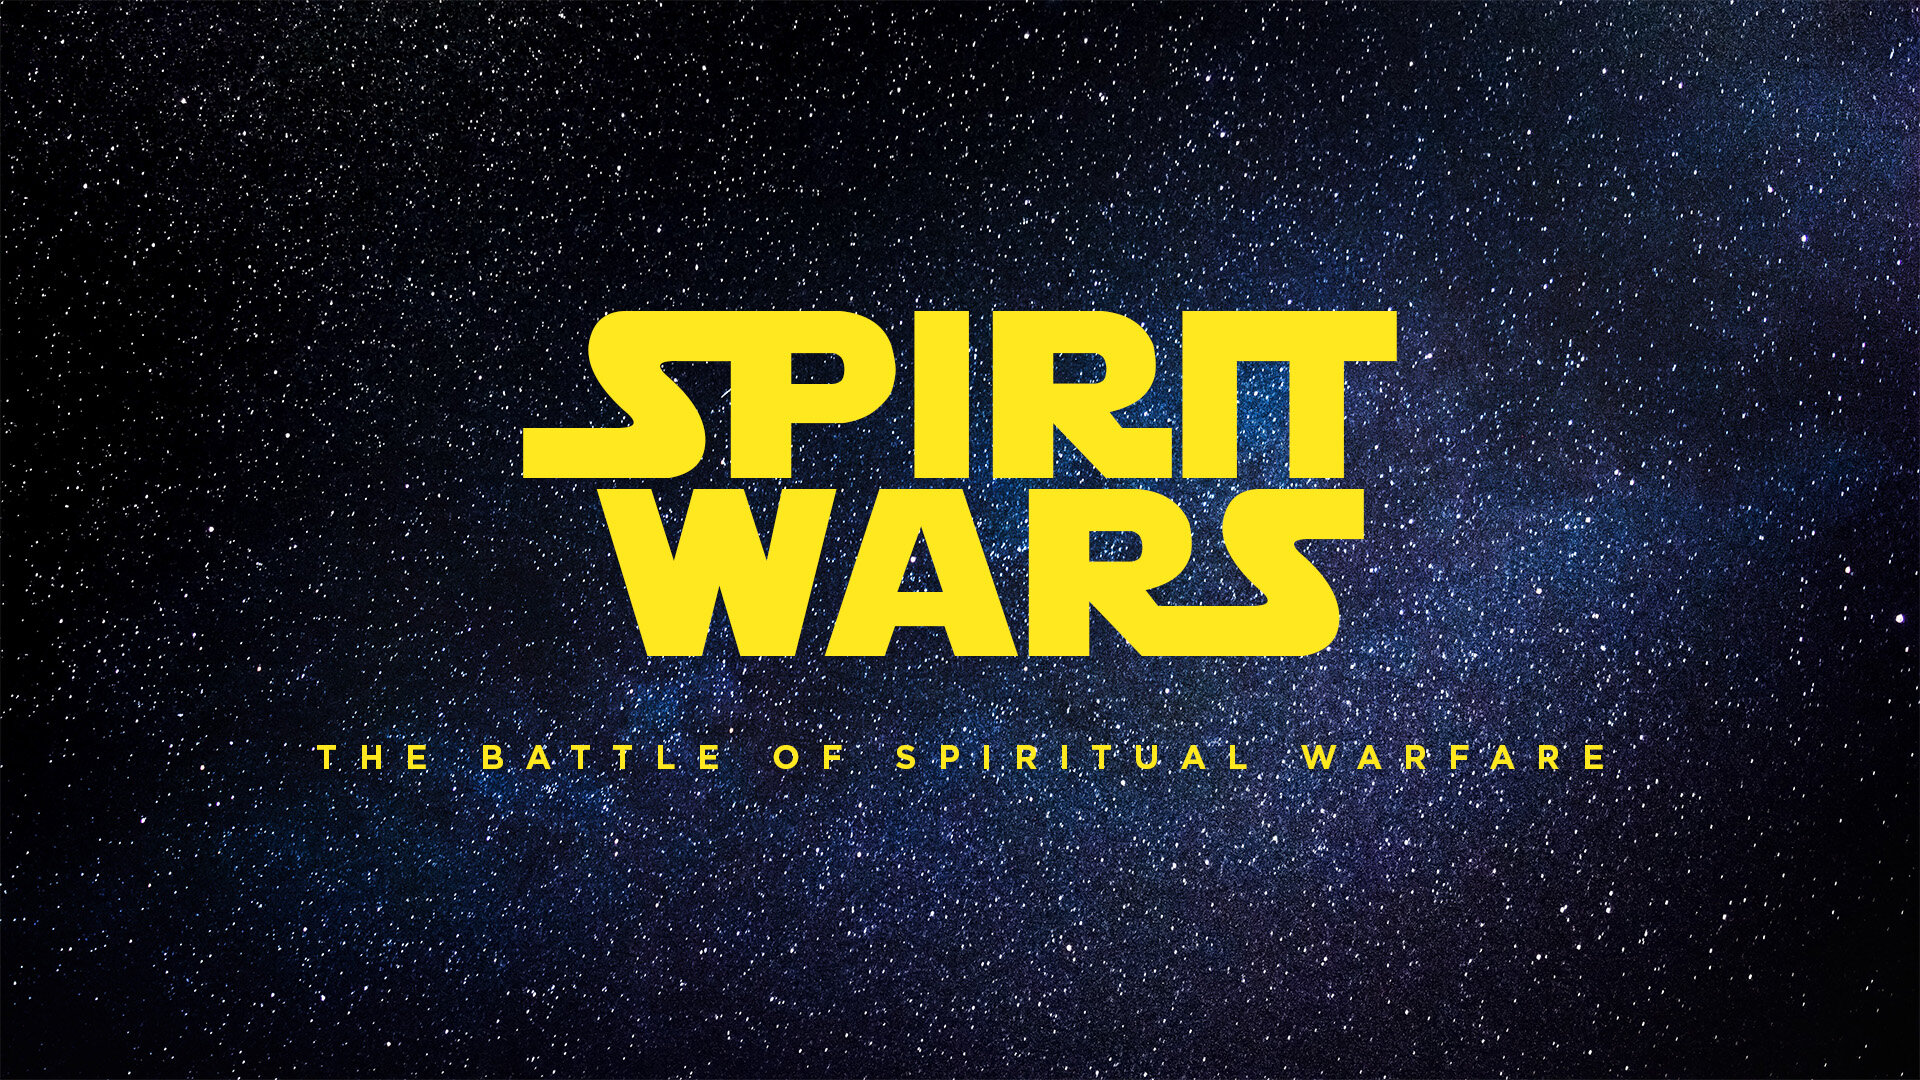 Spirit Wars Graphic.jpg